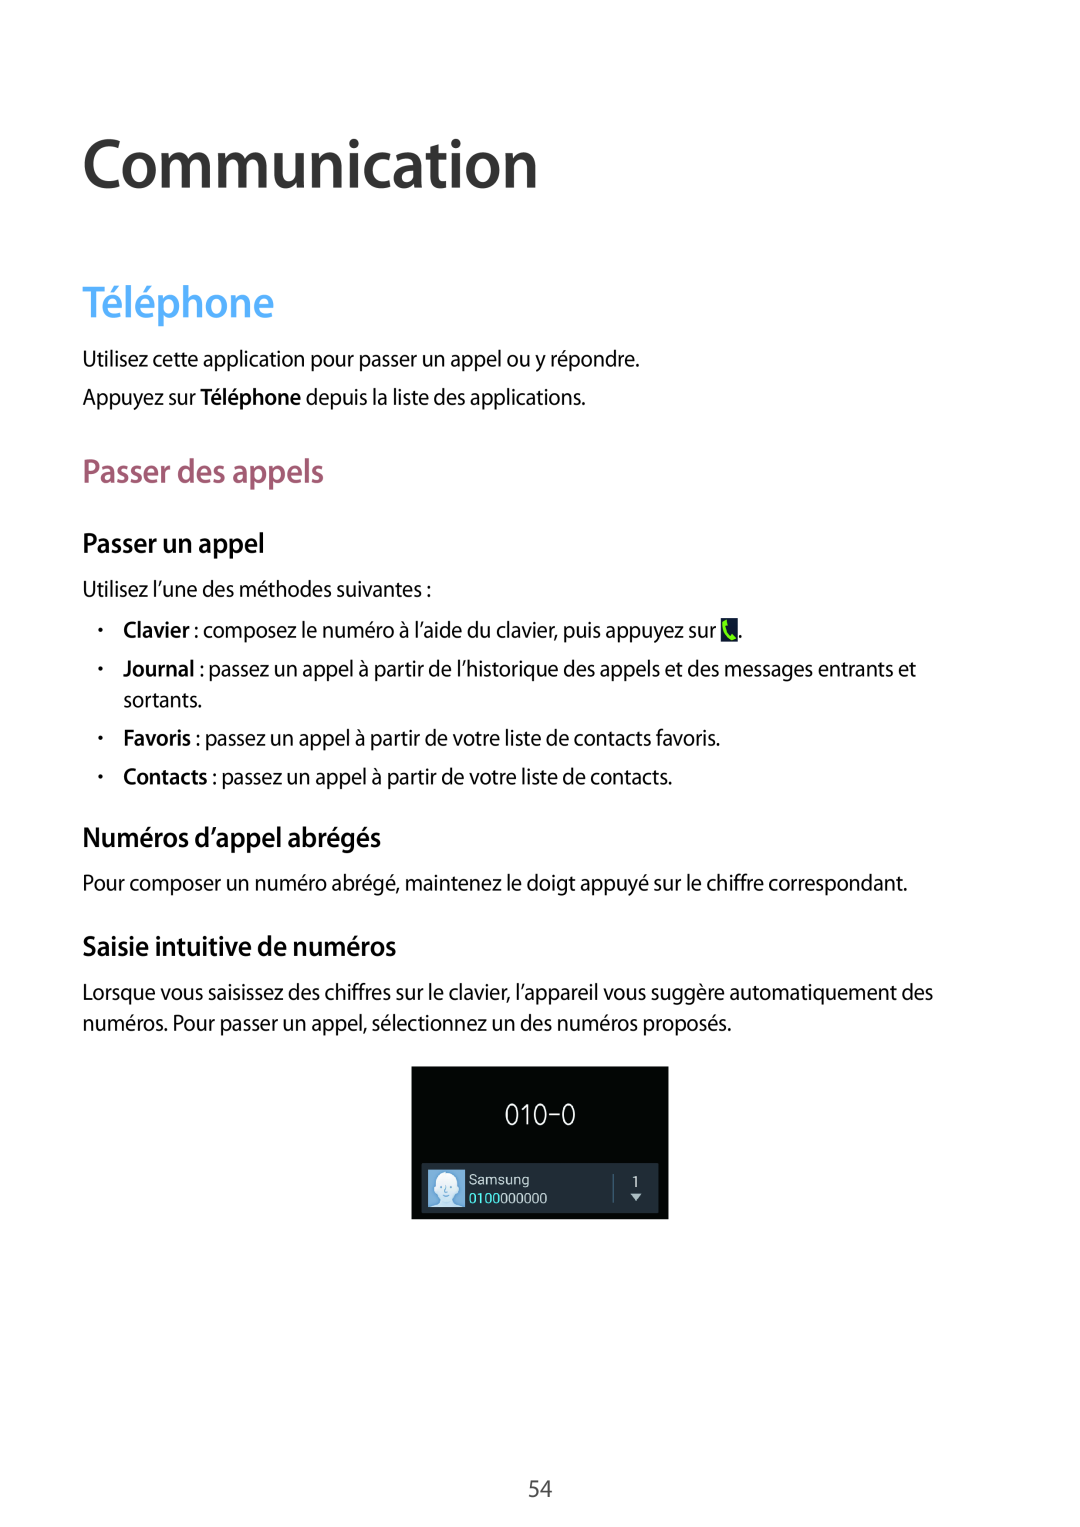 Samsung GT-N7105RWDBOG manual Communication, Téléphone, Passer des appels, Passer un appel, Numéros d’appel abrégés 